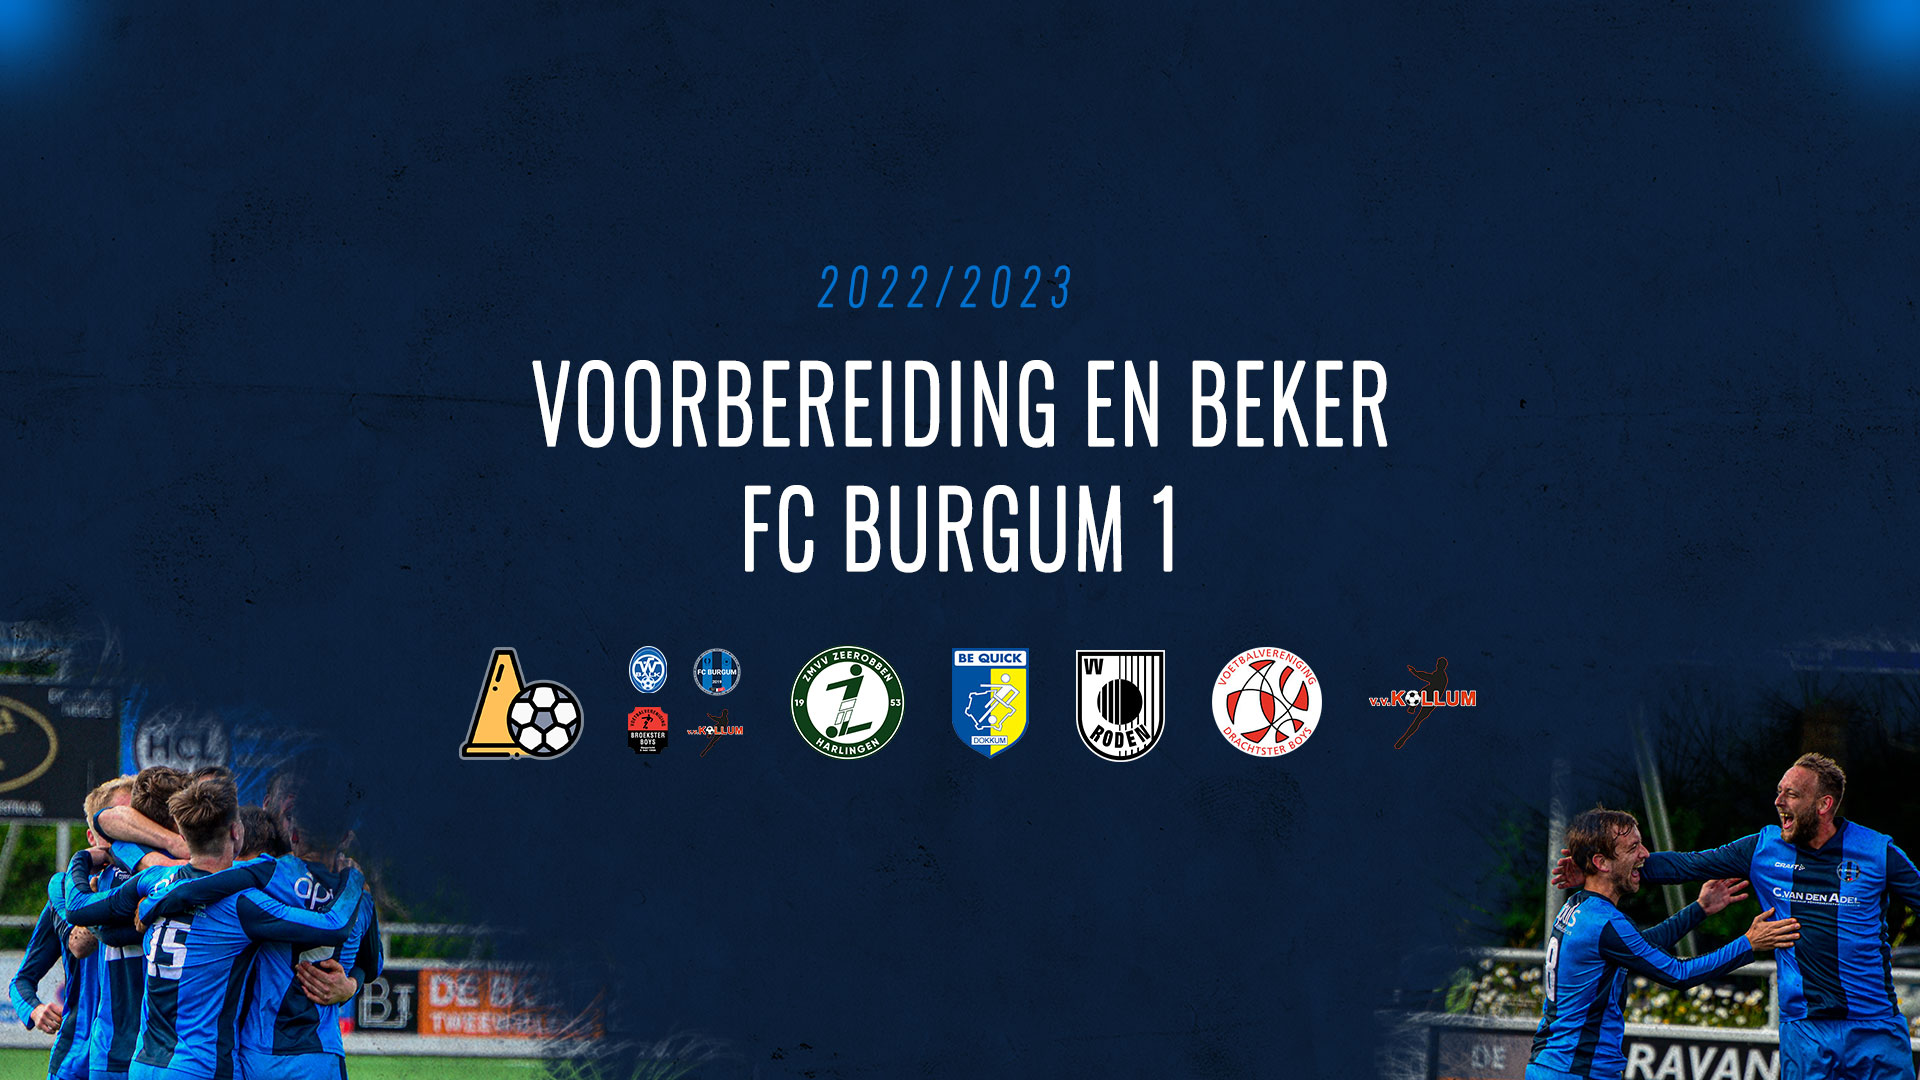 Voorbereiding en beker FC Burgum 1